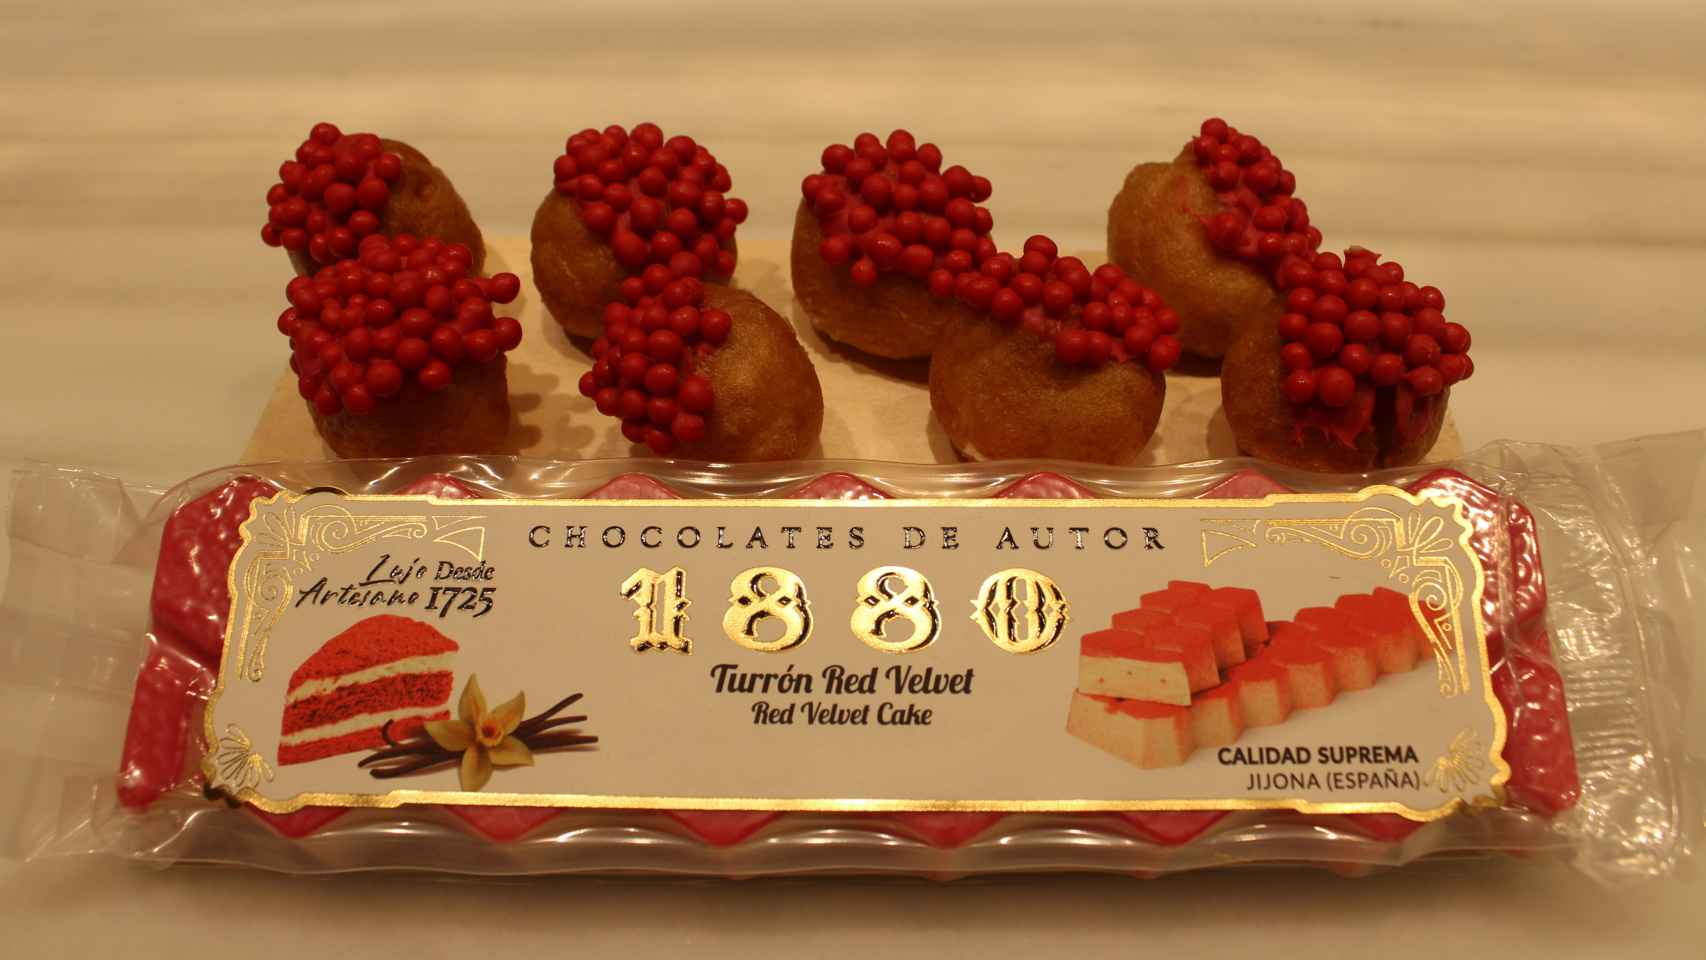 El turrón de Red Velvet, acompañado de los buñuelos basados en el dulce de 1880.